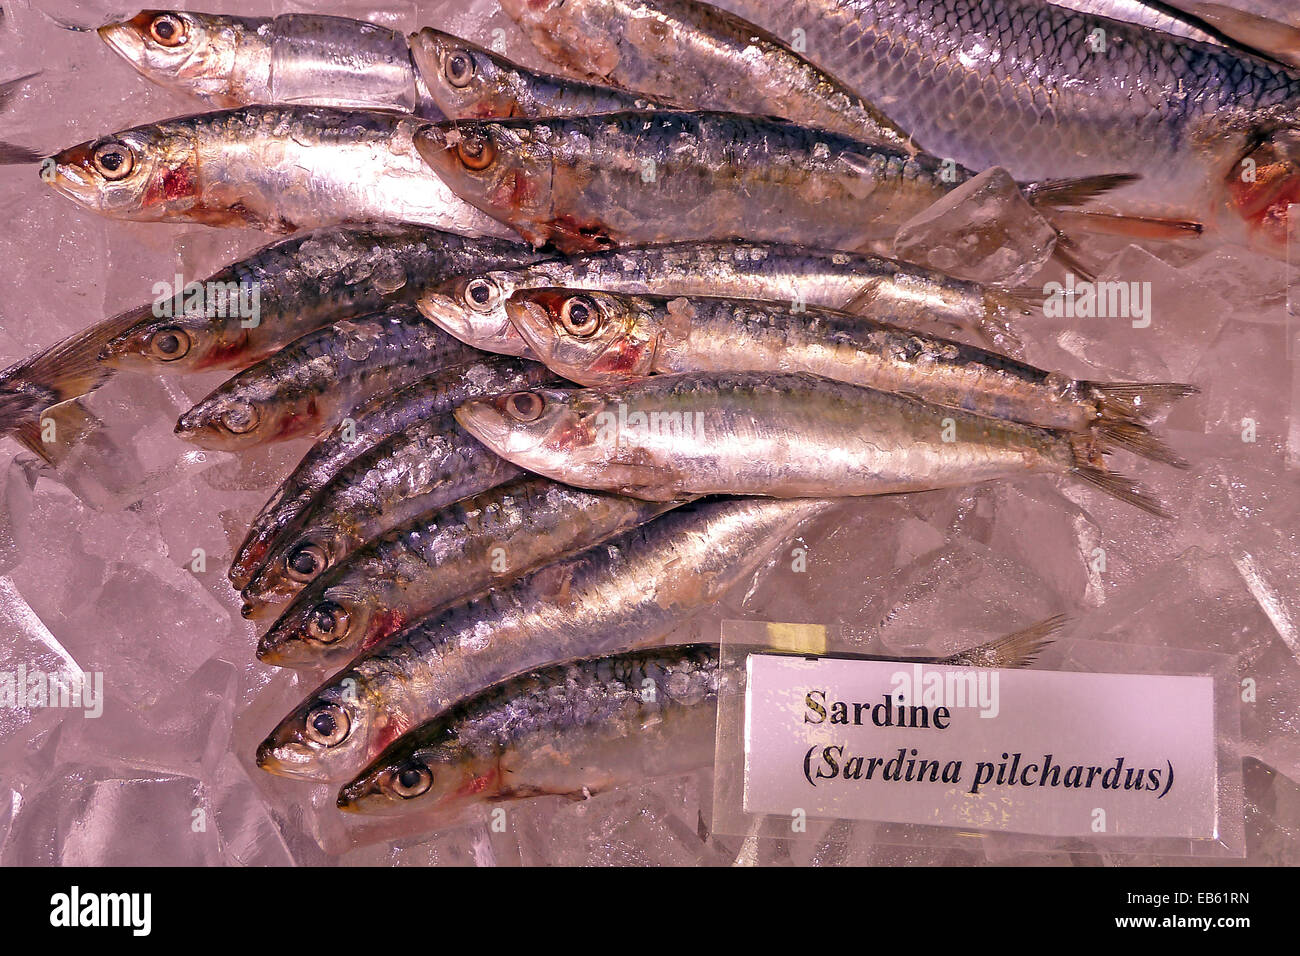 Sardinen auf Eis; Fischmesse Bremerhaven, Sardina pilchardus, Stock Photo